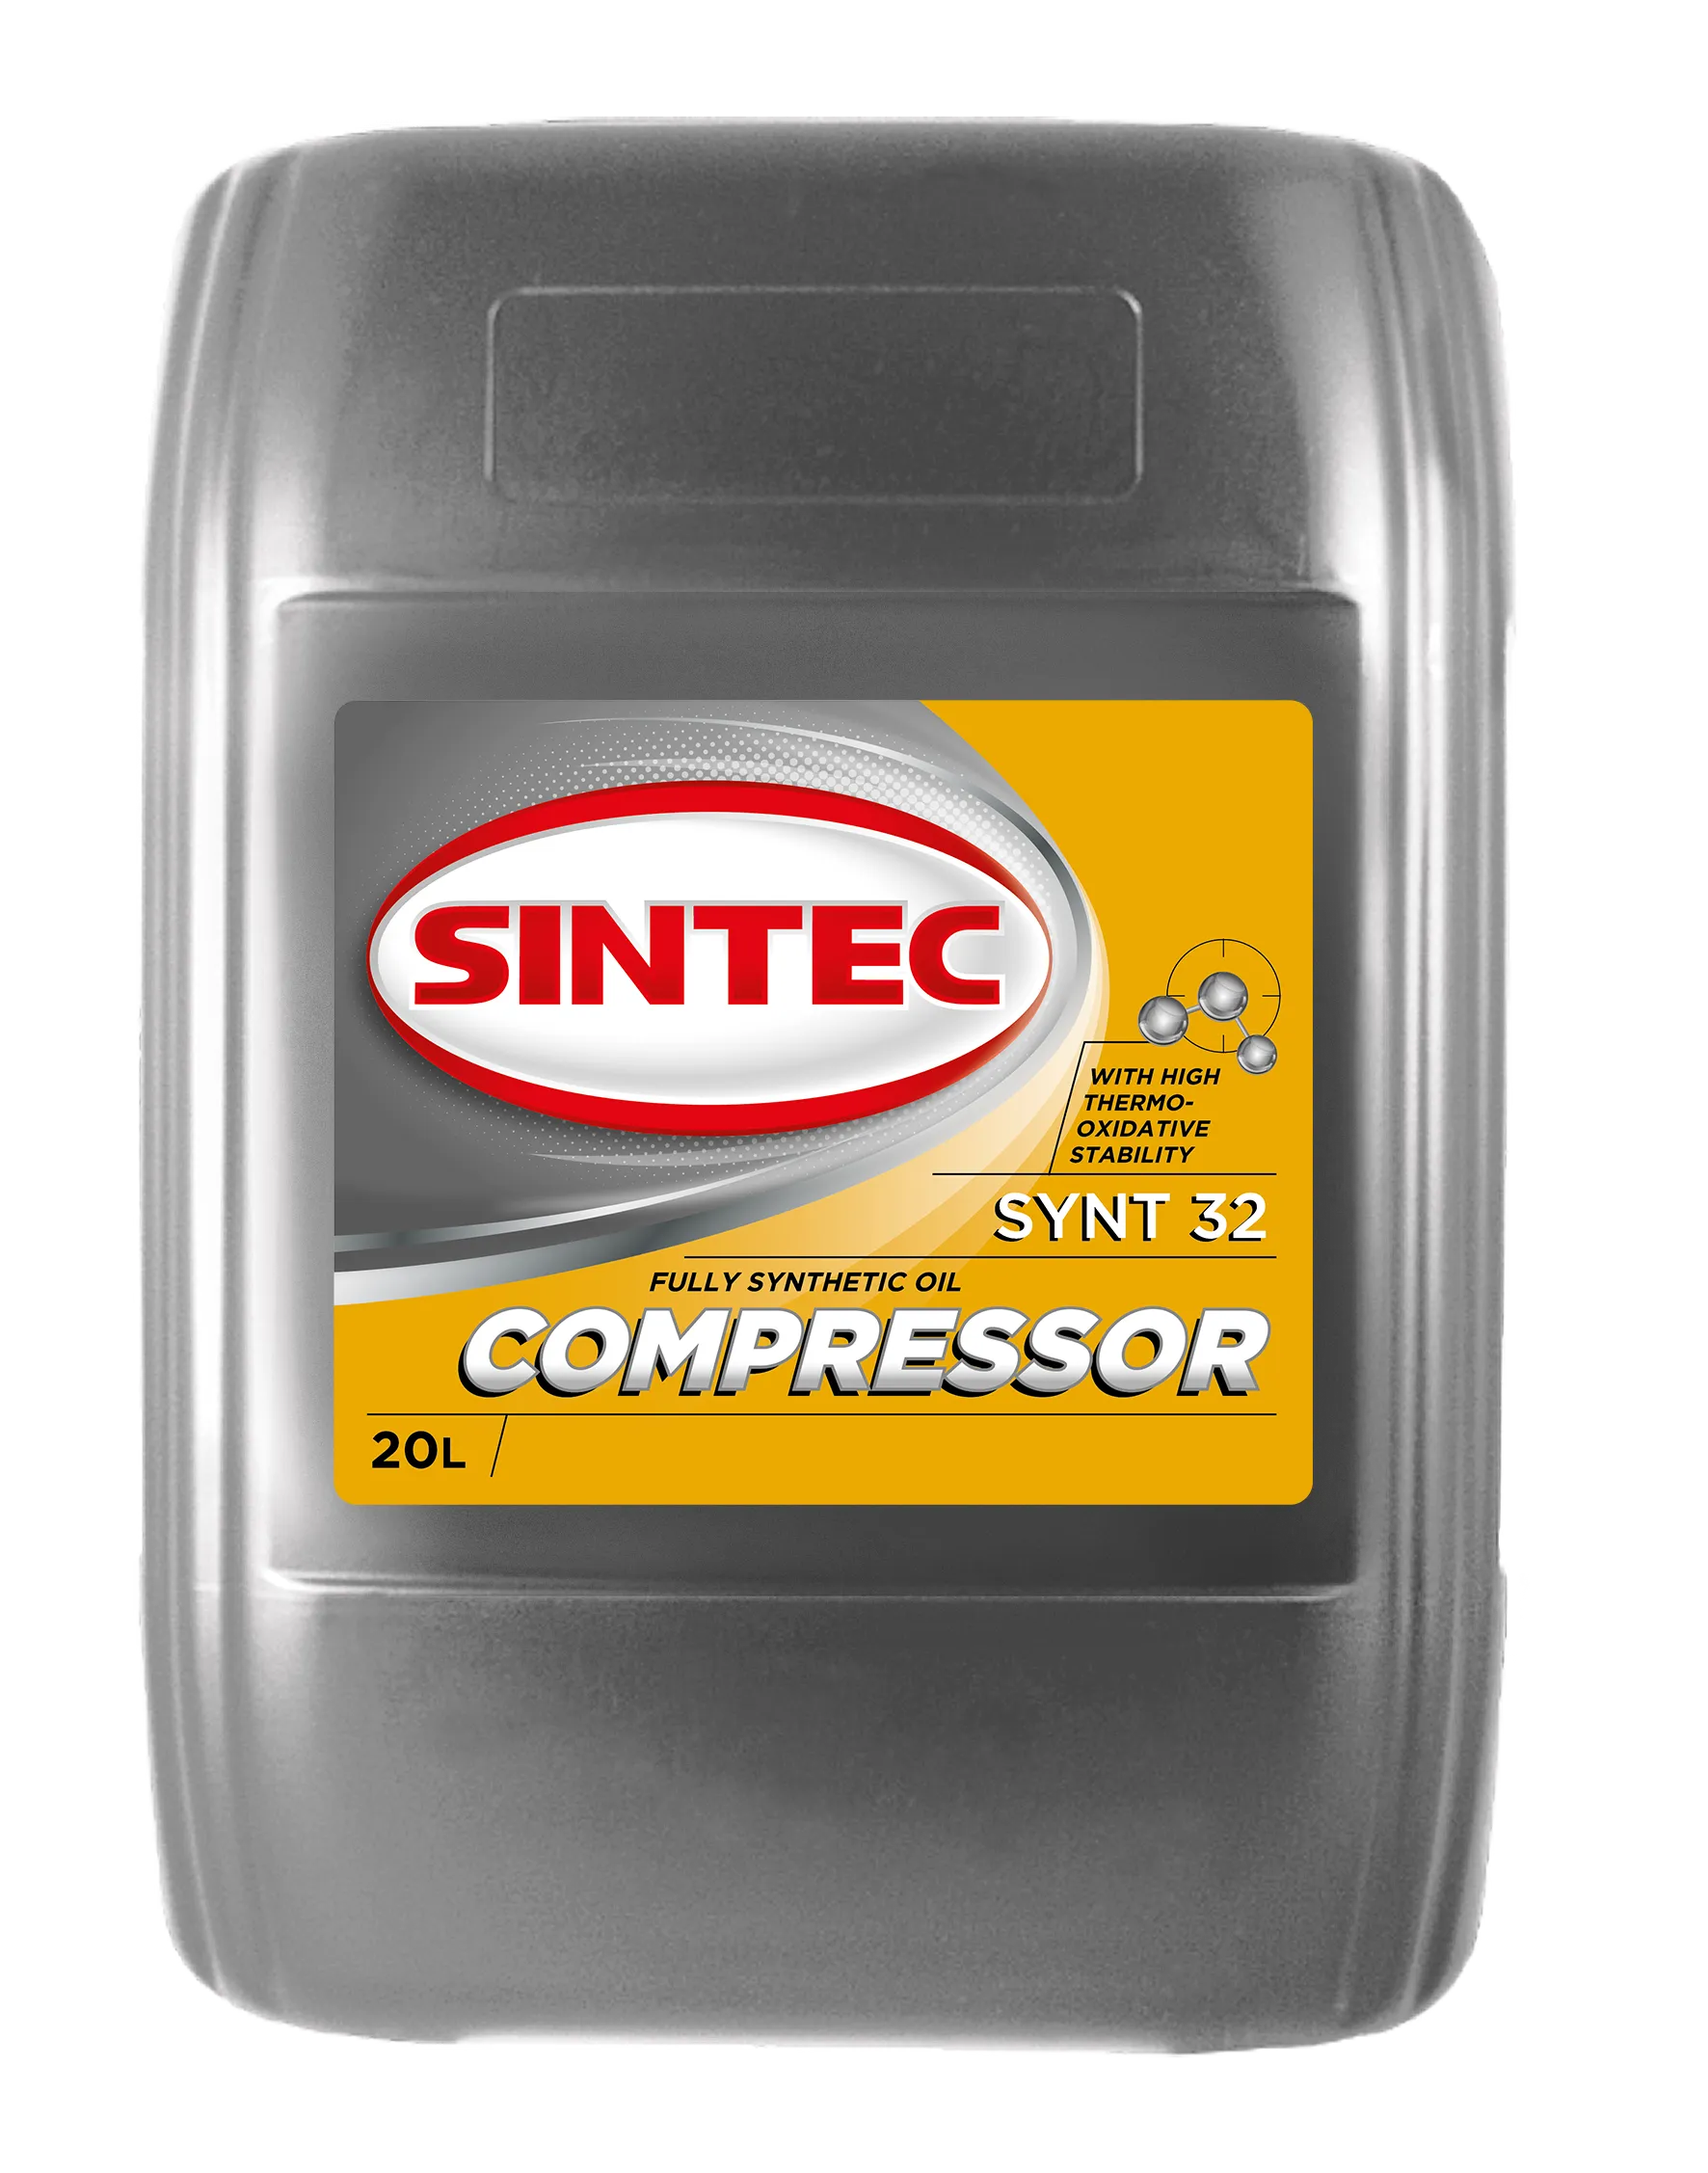 SINTEC COMPRESSOR SYNT 32 Компрессорные масла: описание, применение, свойства, где купить